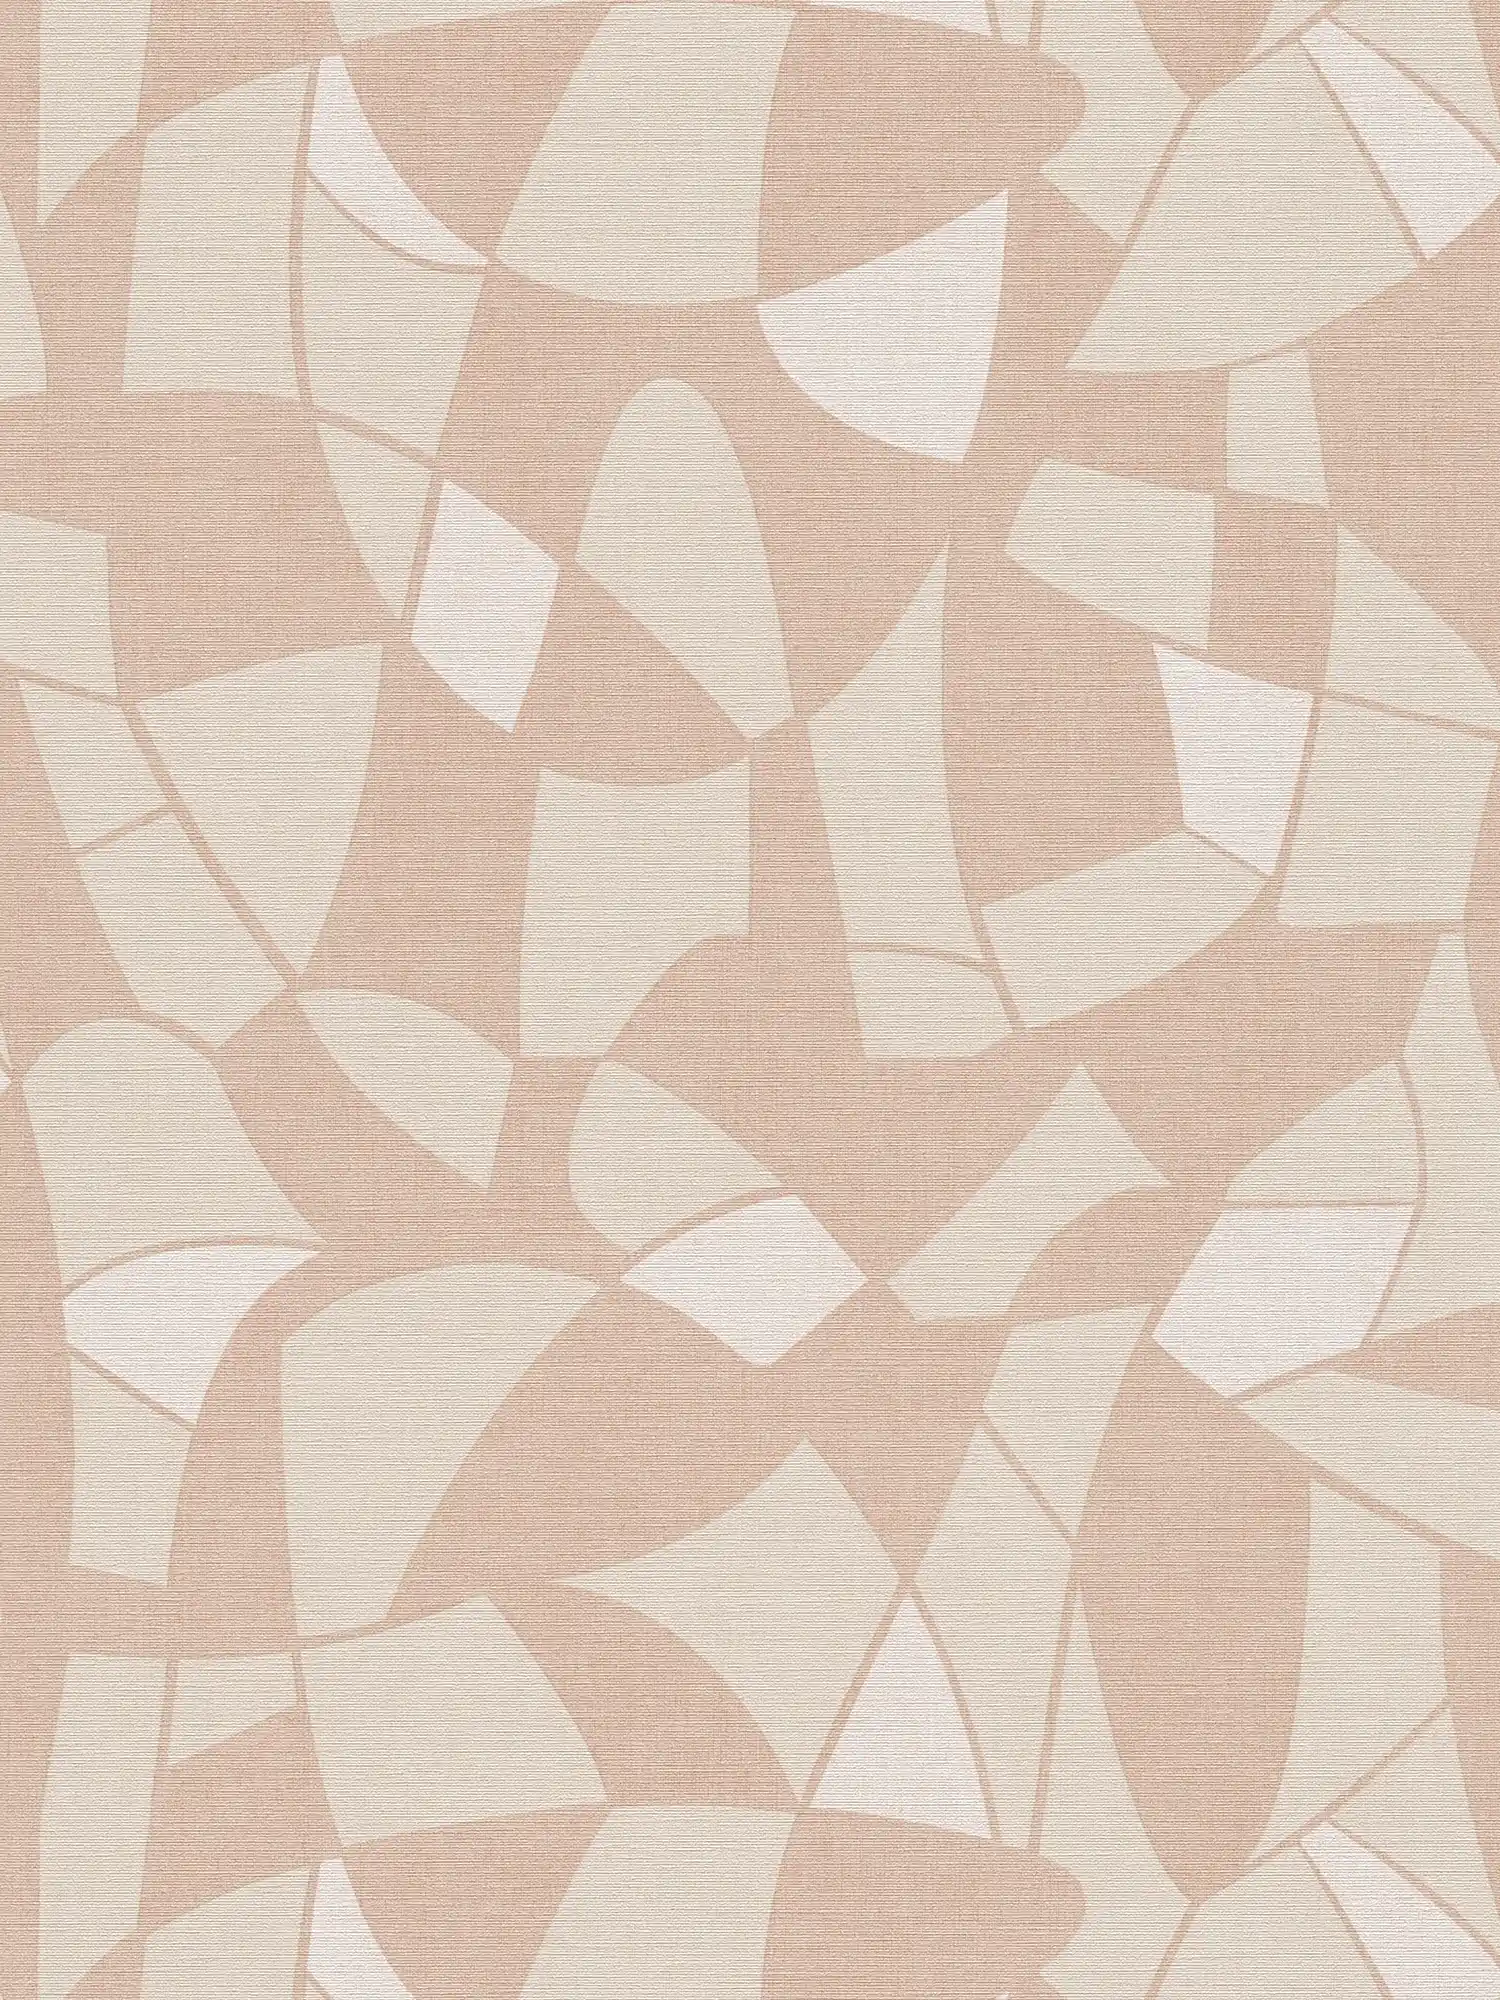 Non-woven wallpaper in geometric style - beige, cream
